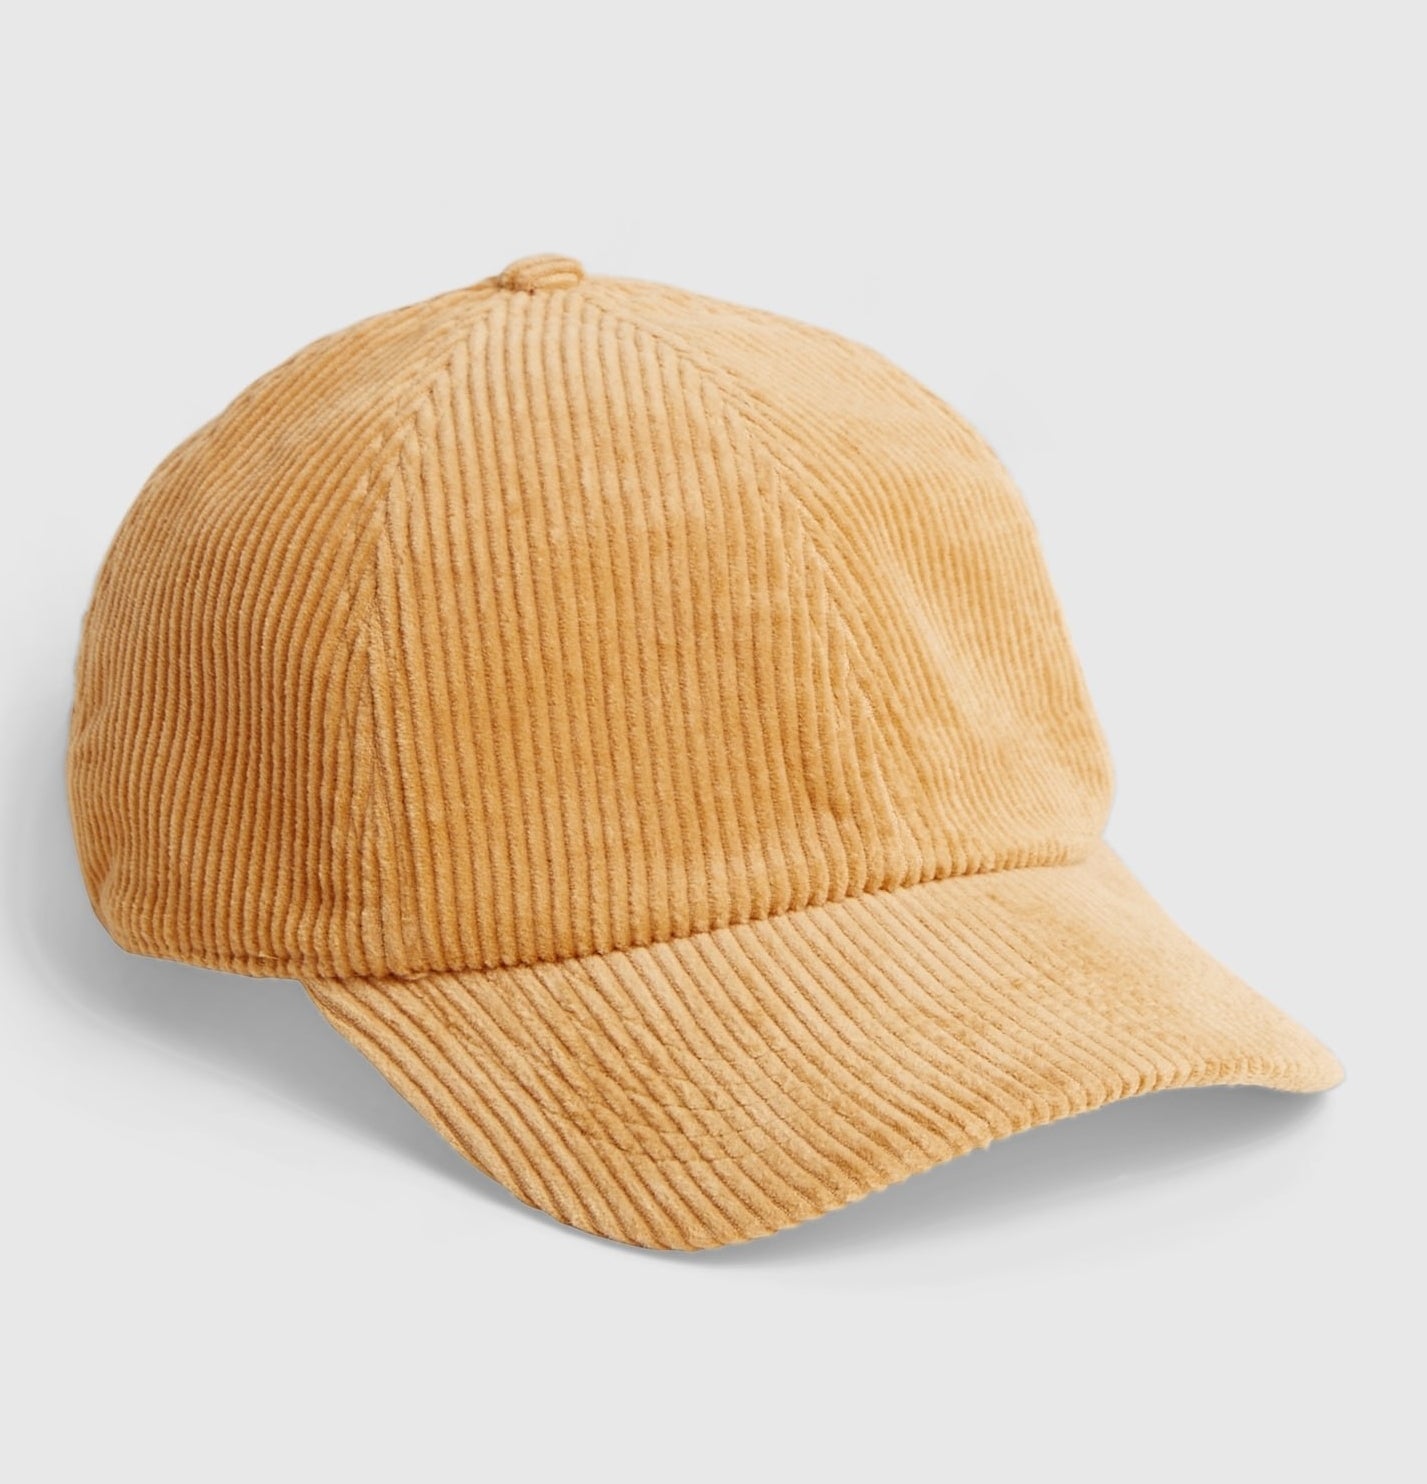 the yellow corduroy baseball hat